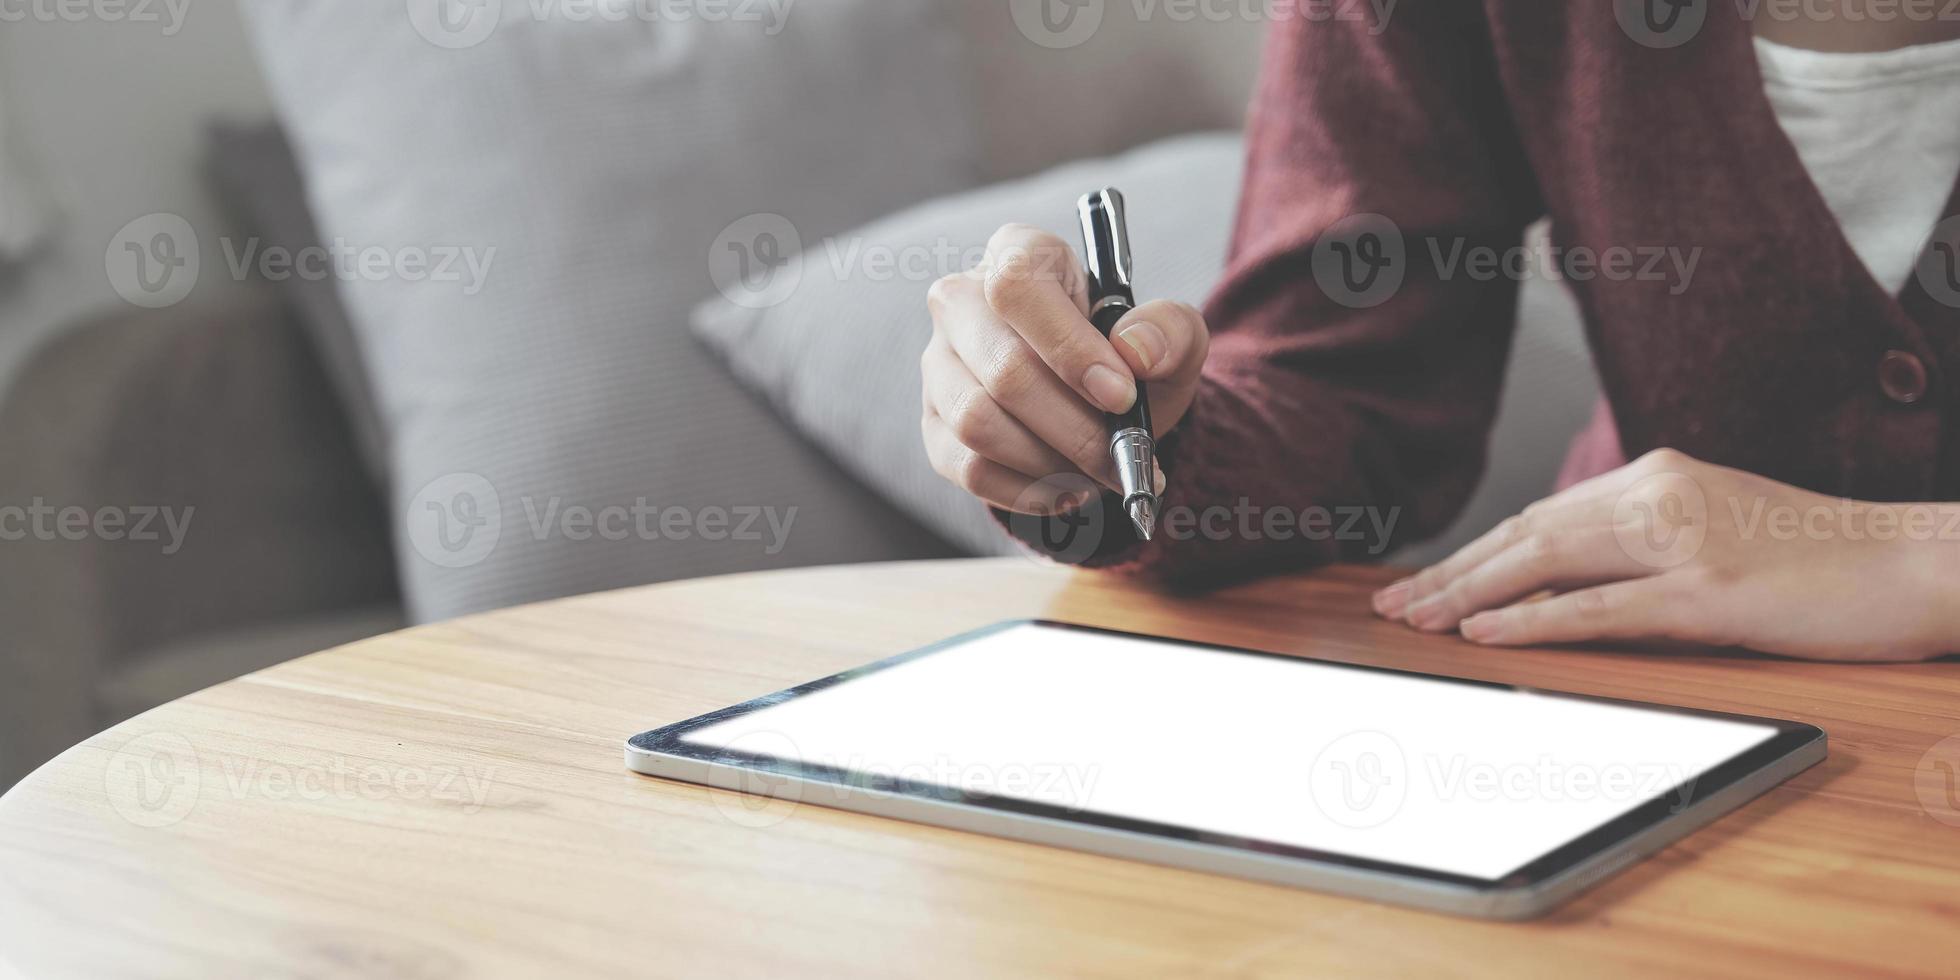 närbild av en ung kvinna använder sig av smart penna teknologi för arbetssätt och skrivning på digital läsplatta skärm foto